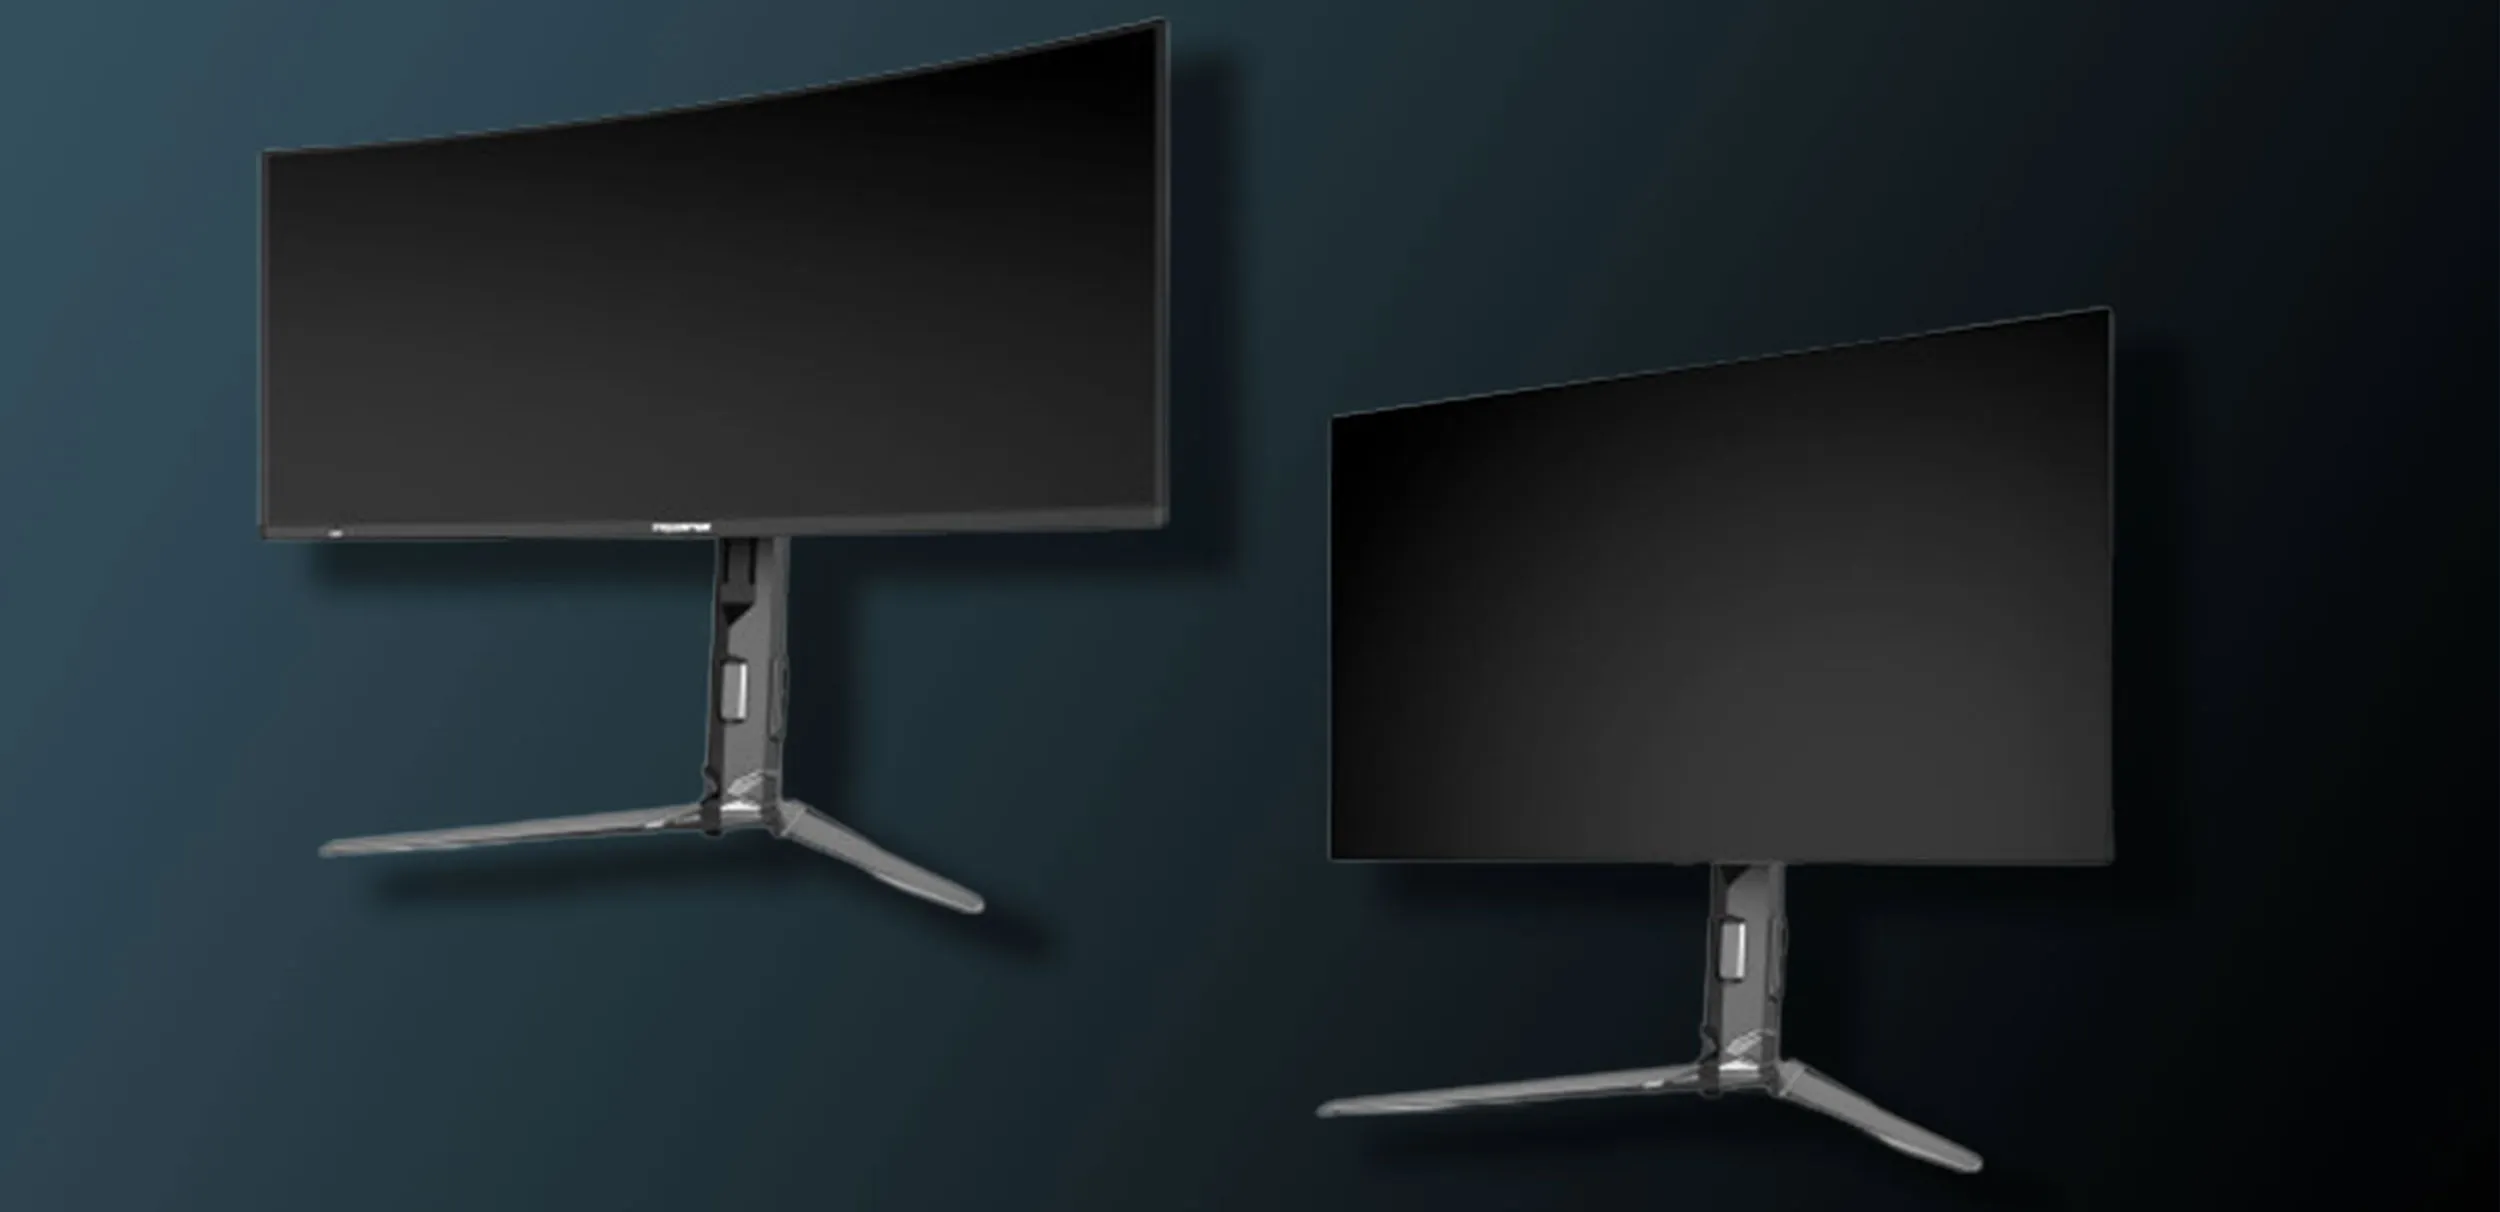 Acer anunció tres nuevos monitores gamers en su línea Predator